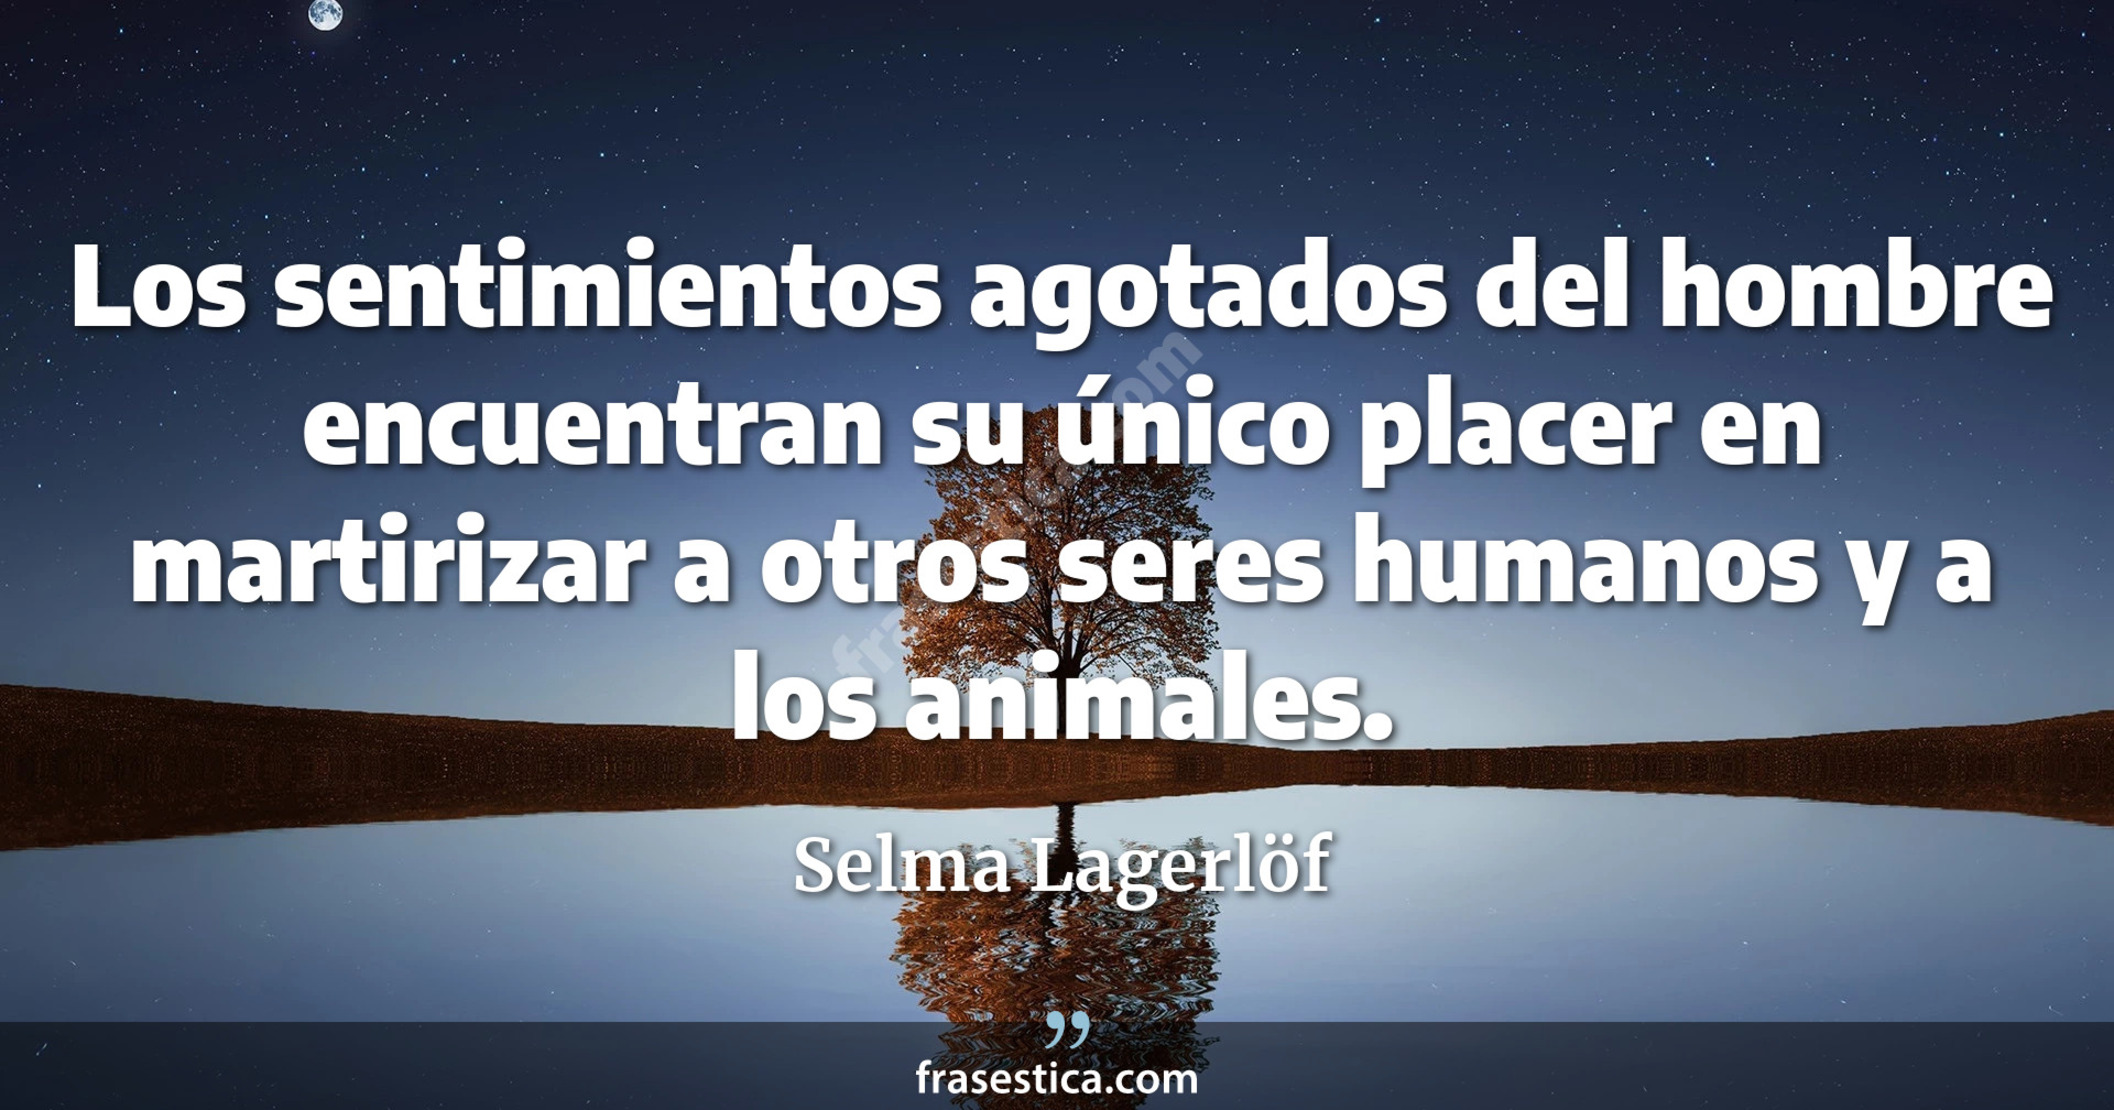 Los sentimientos agotados del hombre encuentran su único placer en martirizar a otros seres humanos y a los animales. - Selma Lagerlöf